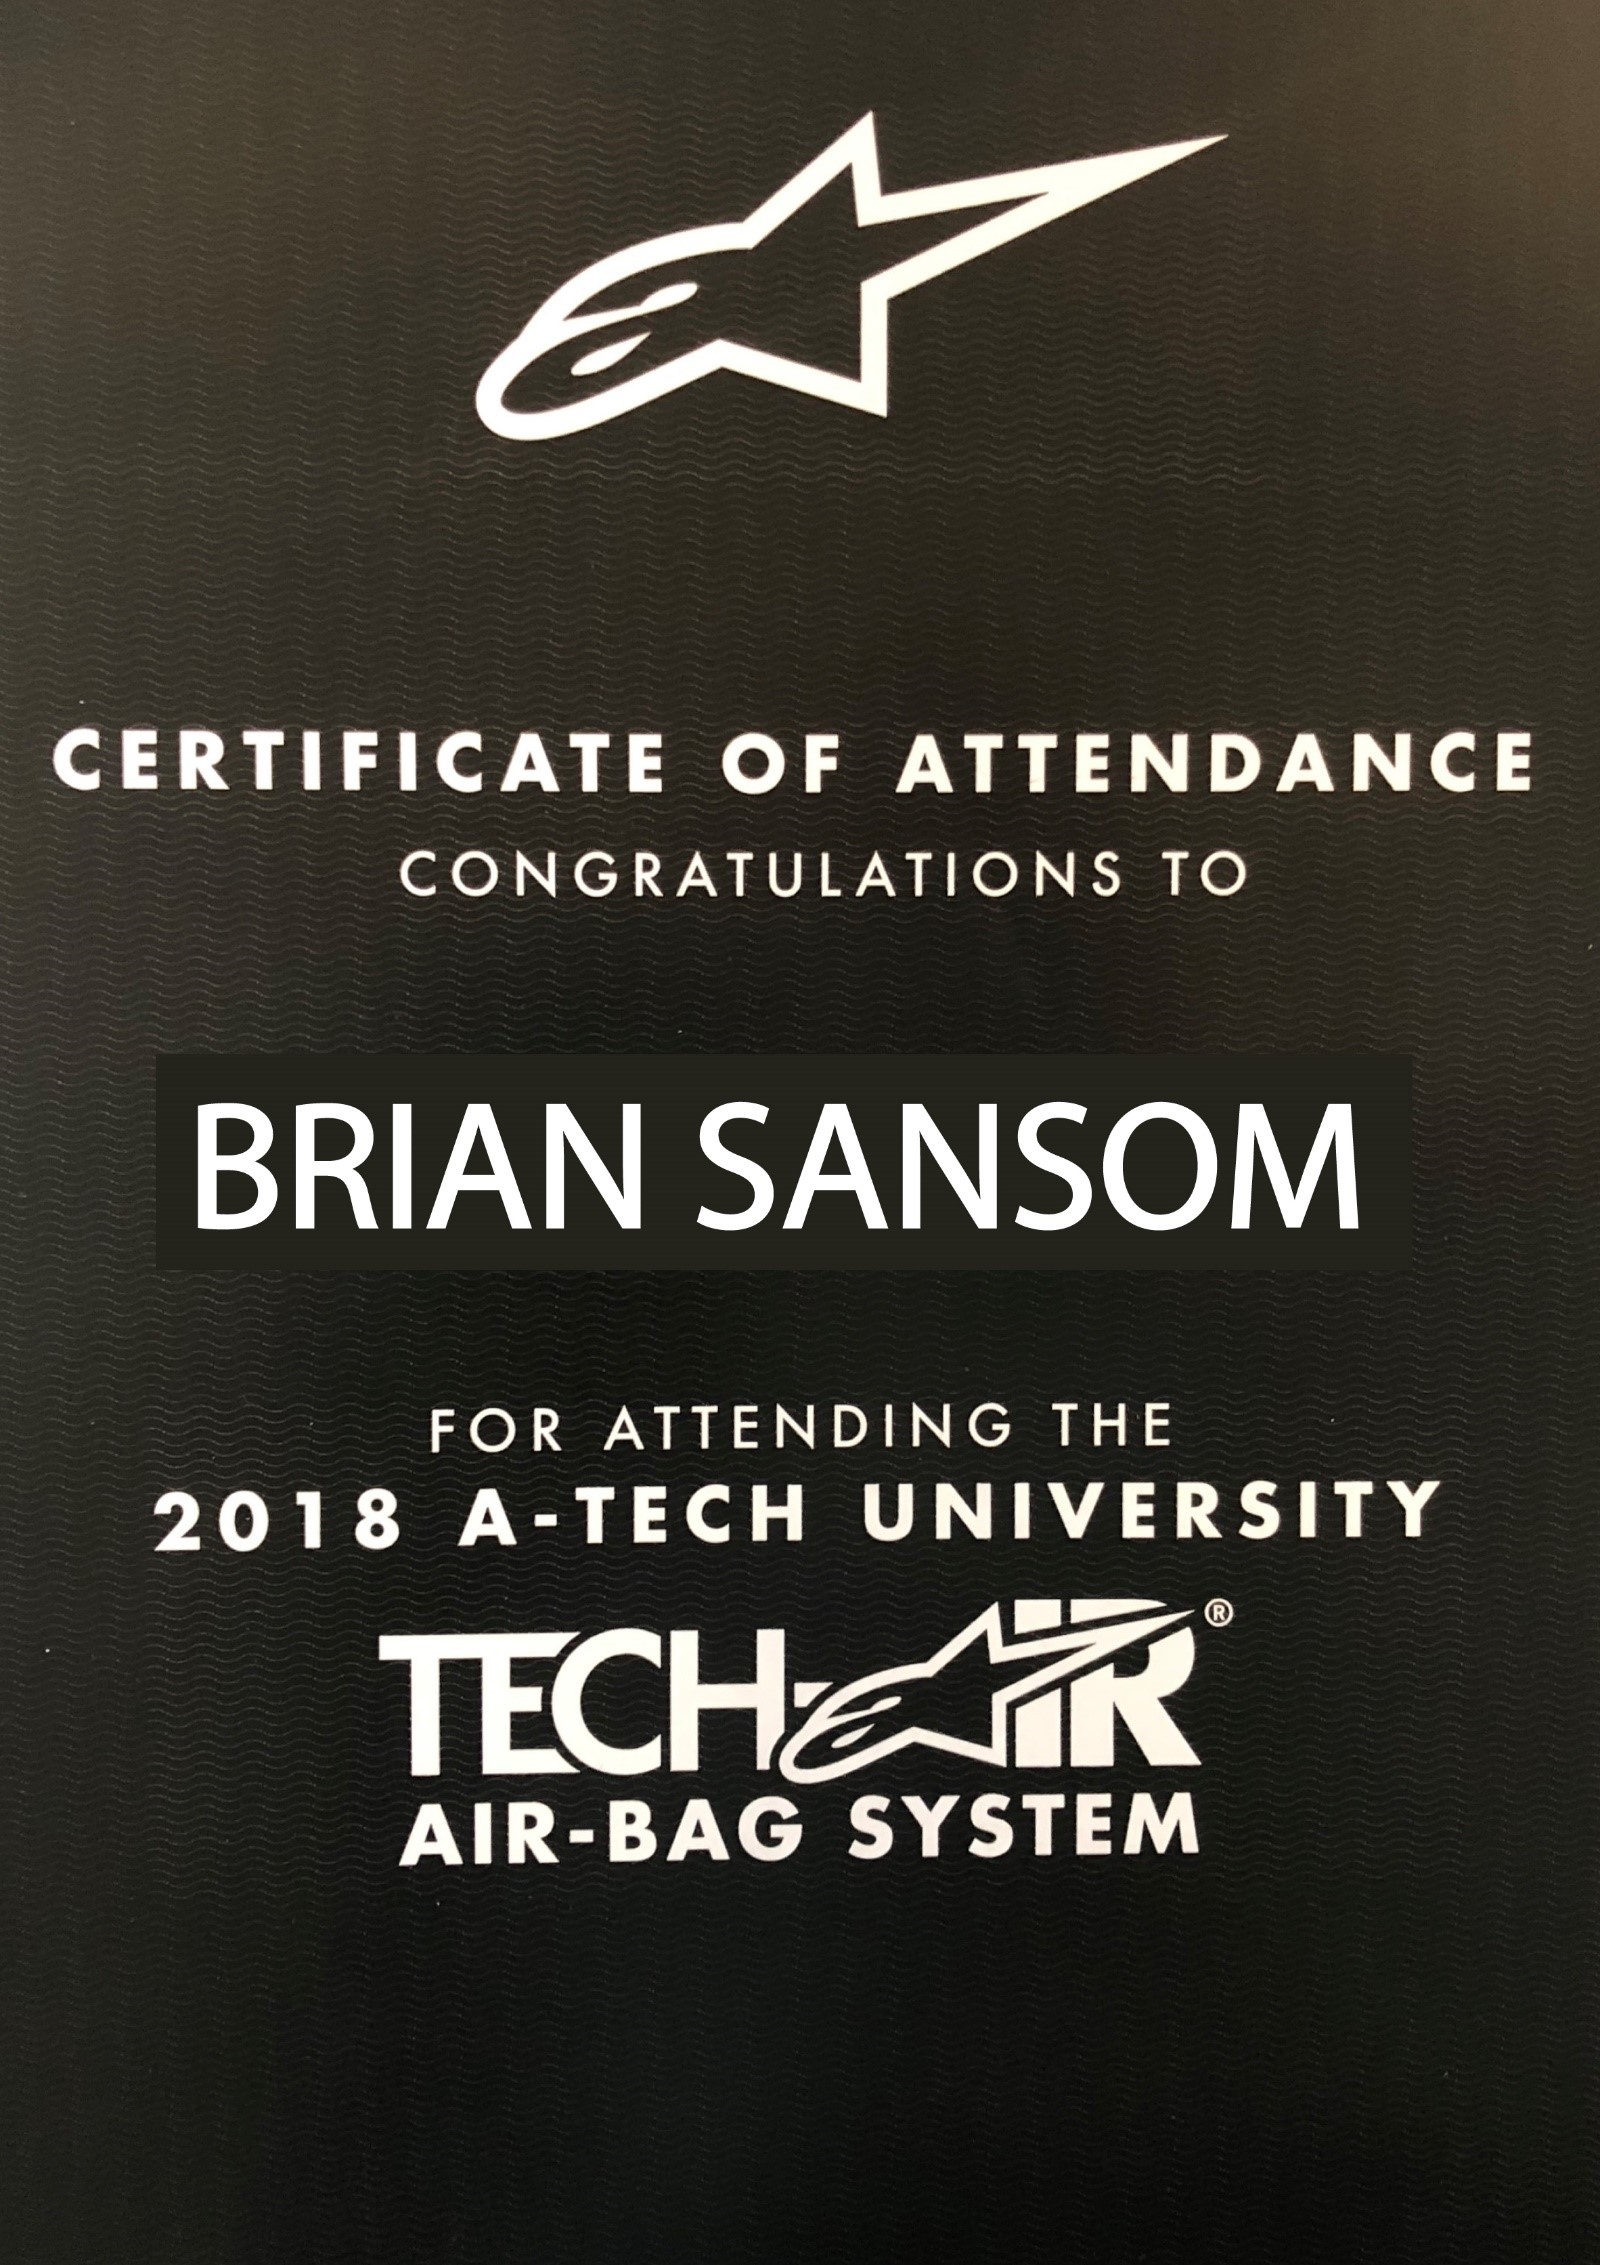 Certificate of attendance Tech Air Aplinestars 2018 A-Tech university